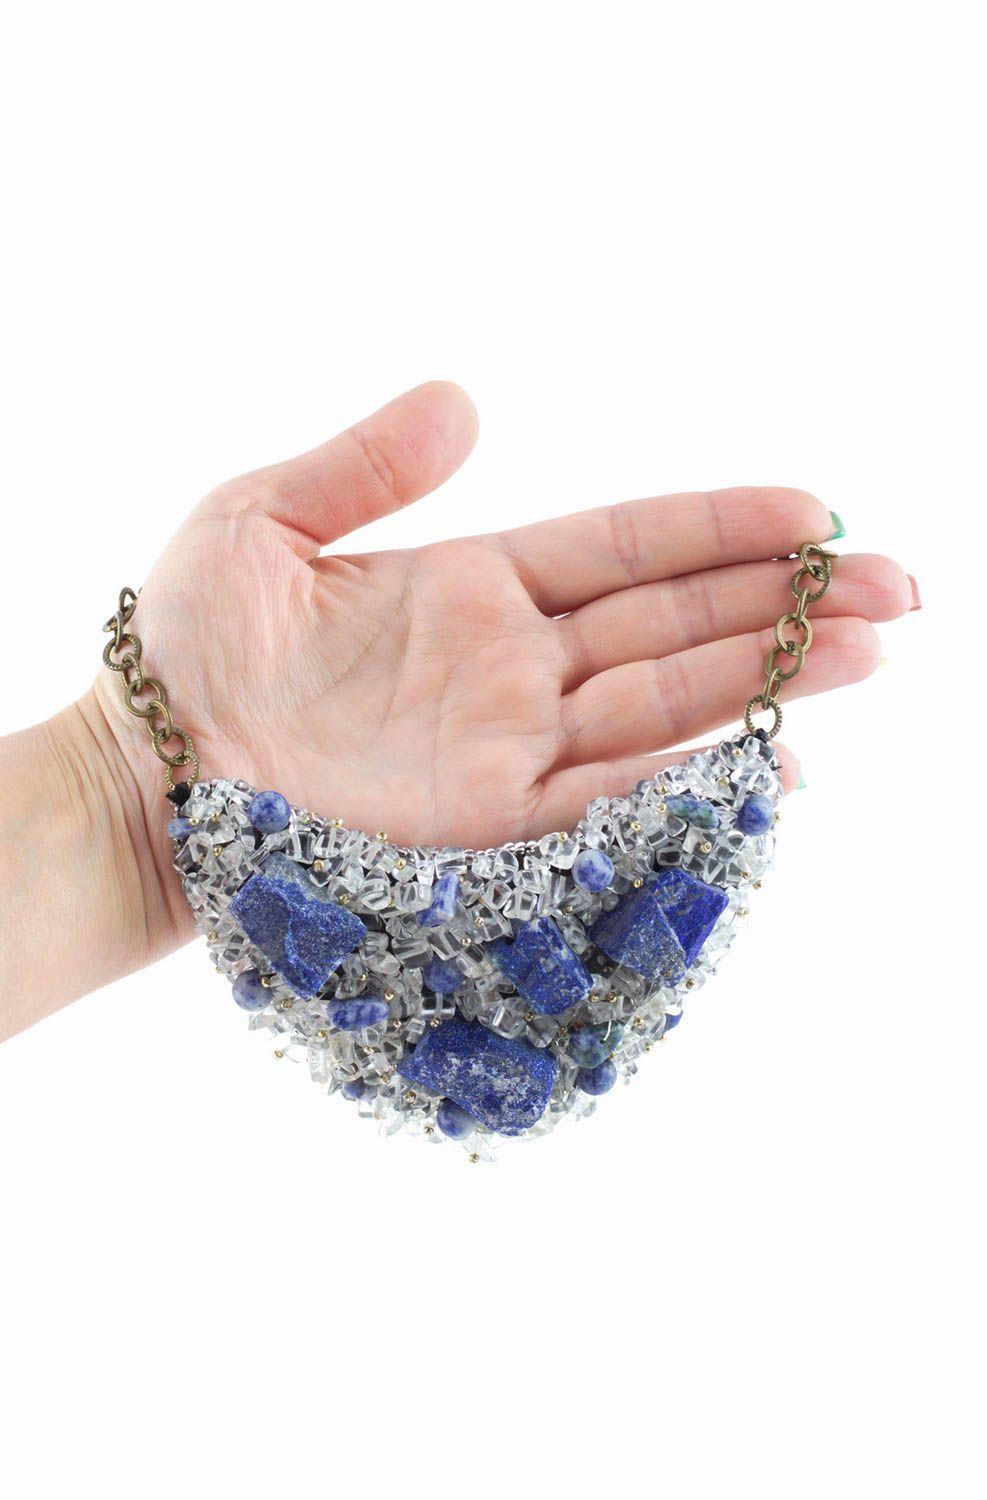 Handmade elegant cute necklace designer stylish jewelry natural stone necklace photo 5